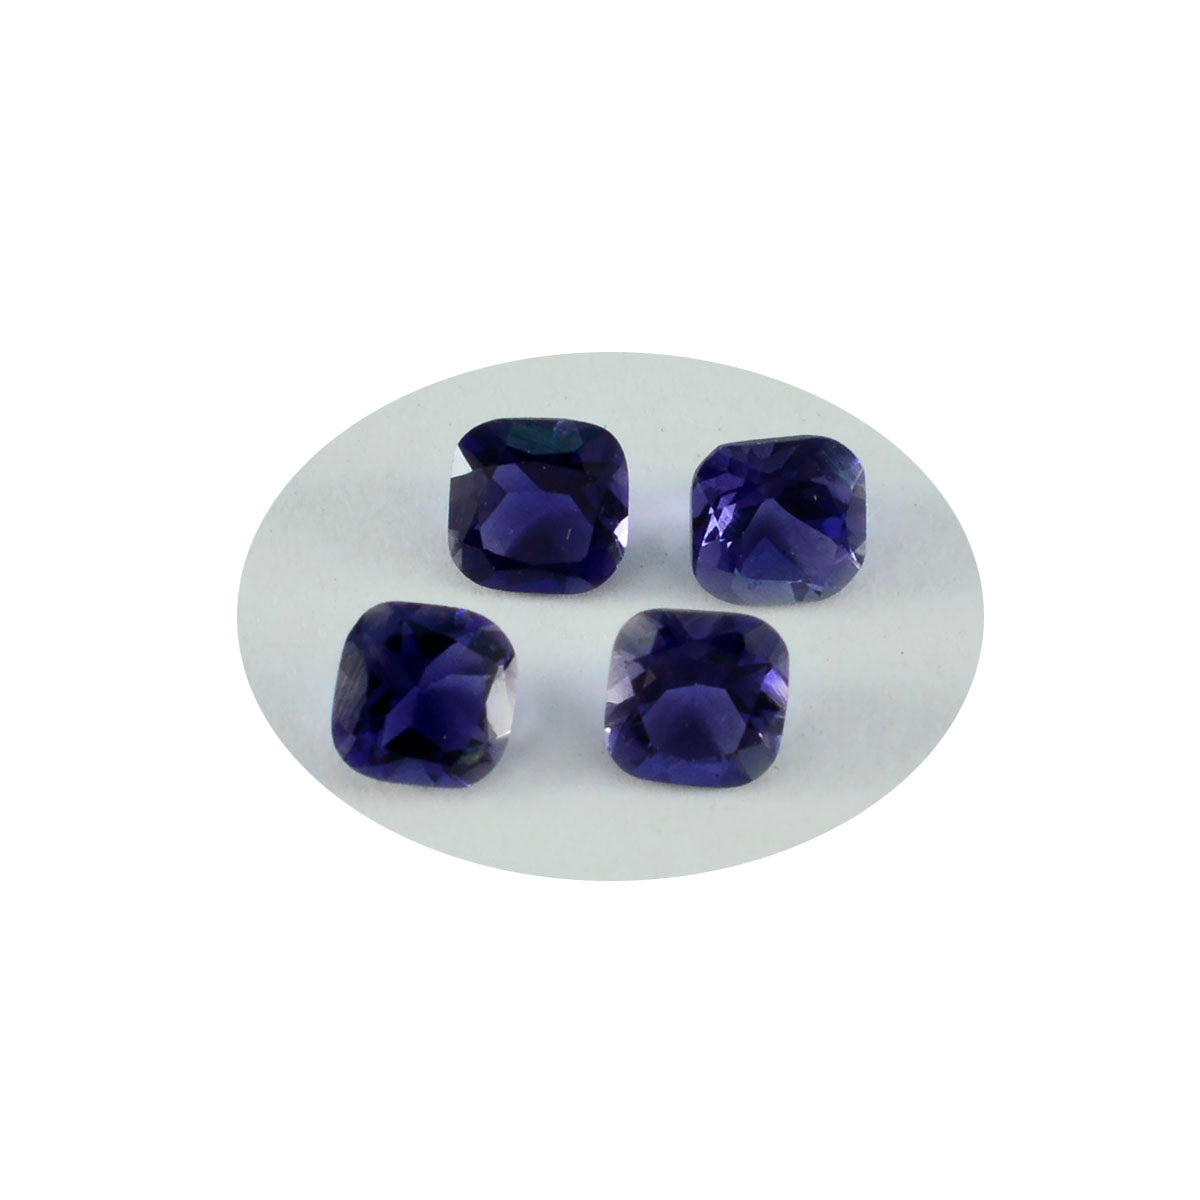 riyogems 1 шт. синий иолит граненый 6x6 мм в форме подушки отличное качество свободный драгоценный камень